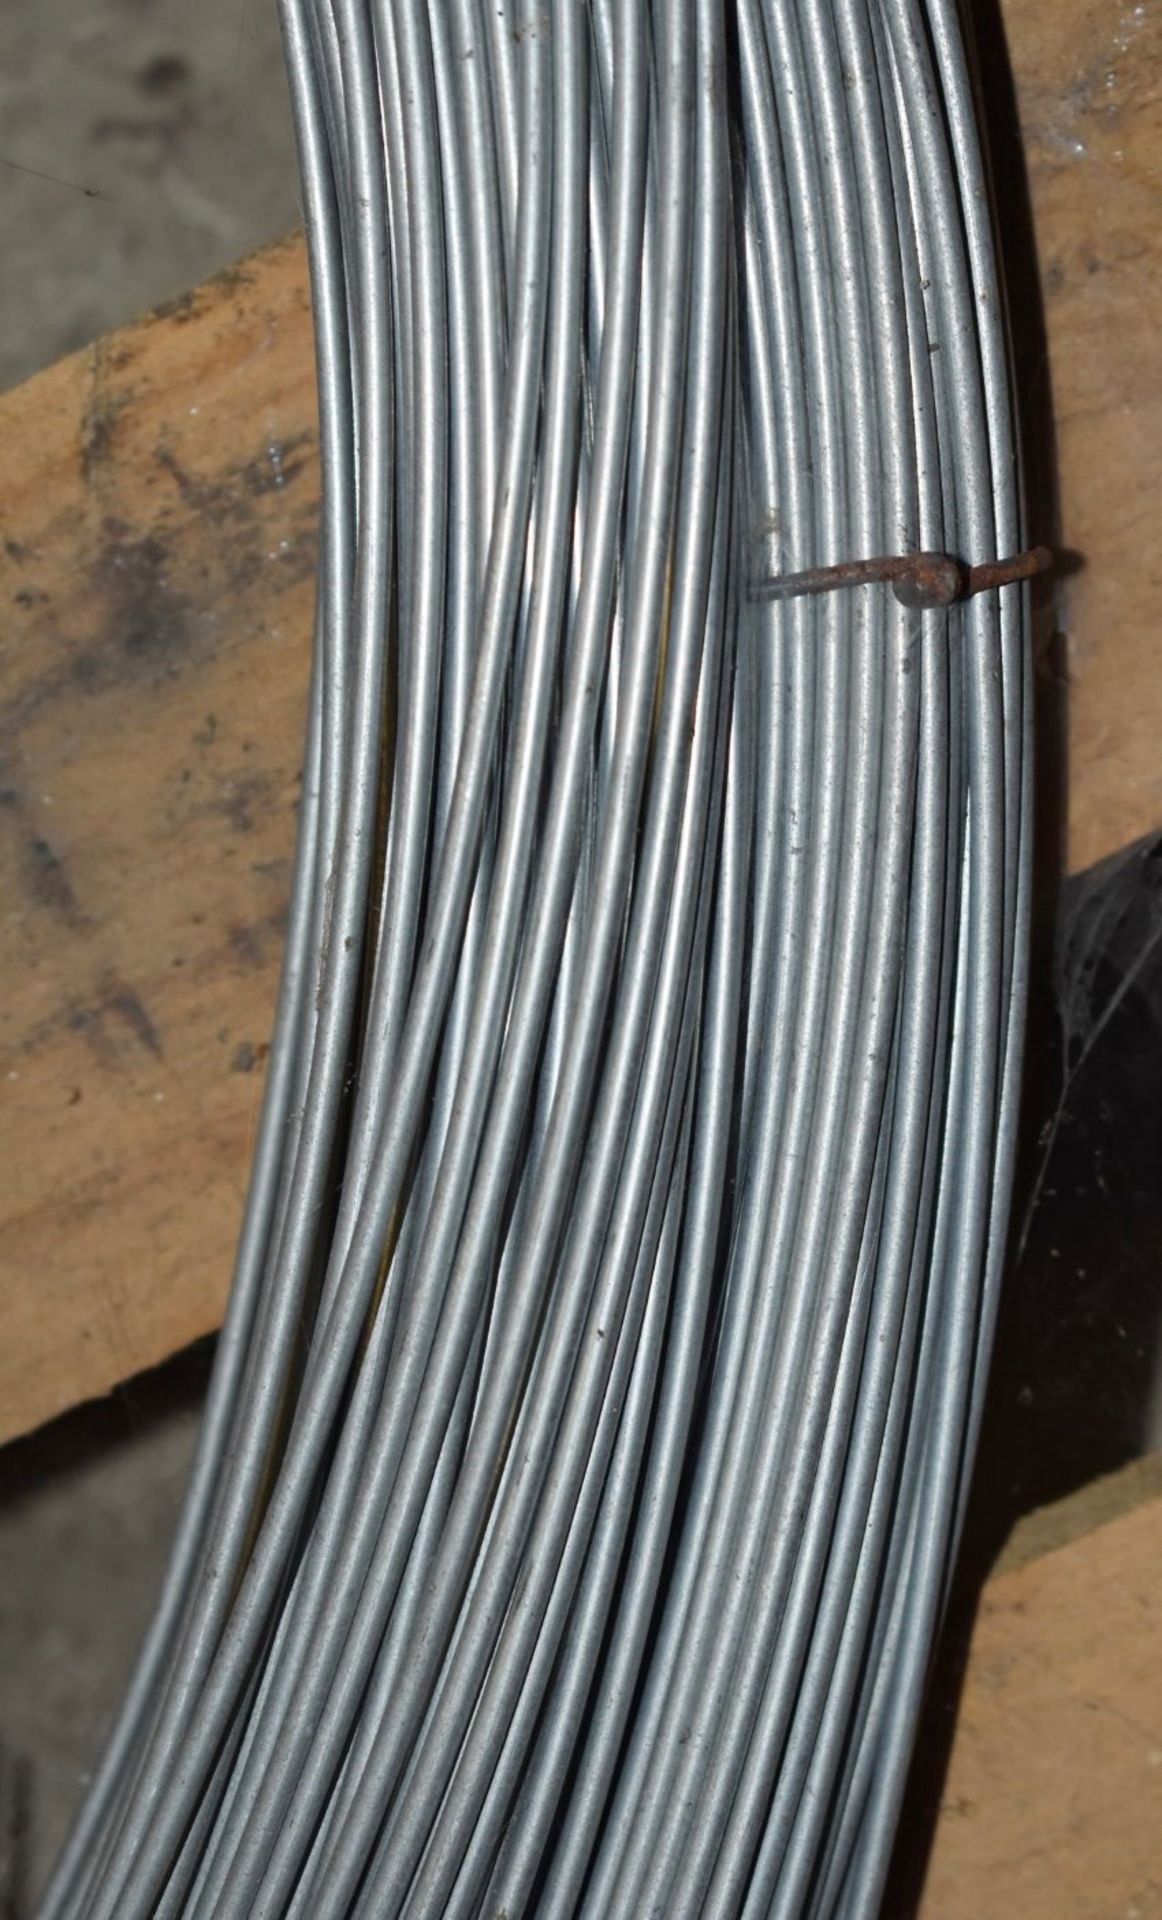 2 x Bundles of Steel Cable With Loop Ends - Unused Bundles - Ref VM129 - Bundle Diameter 80 cms - - Image 2 of 4